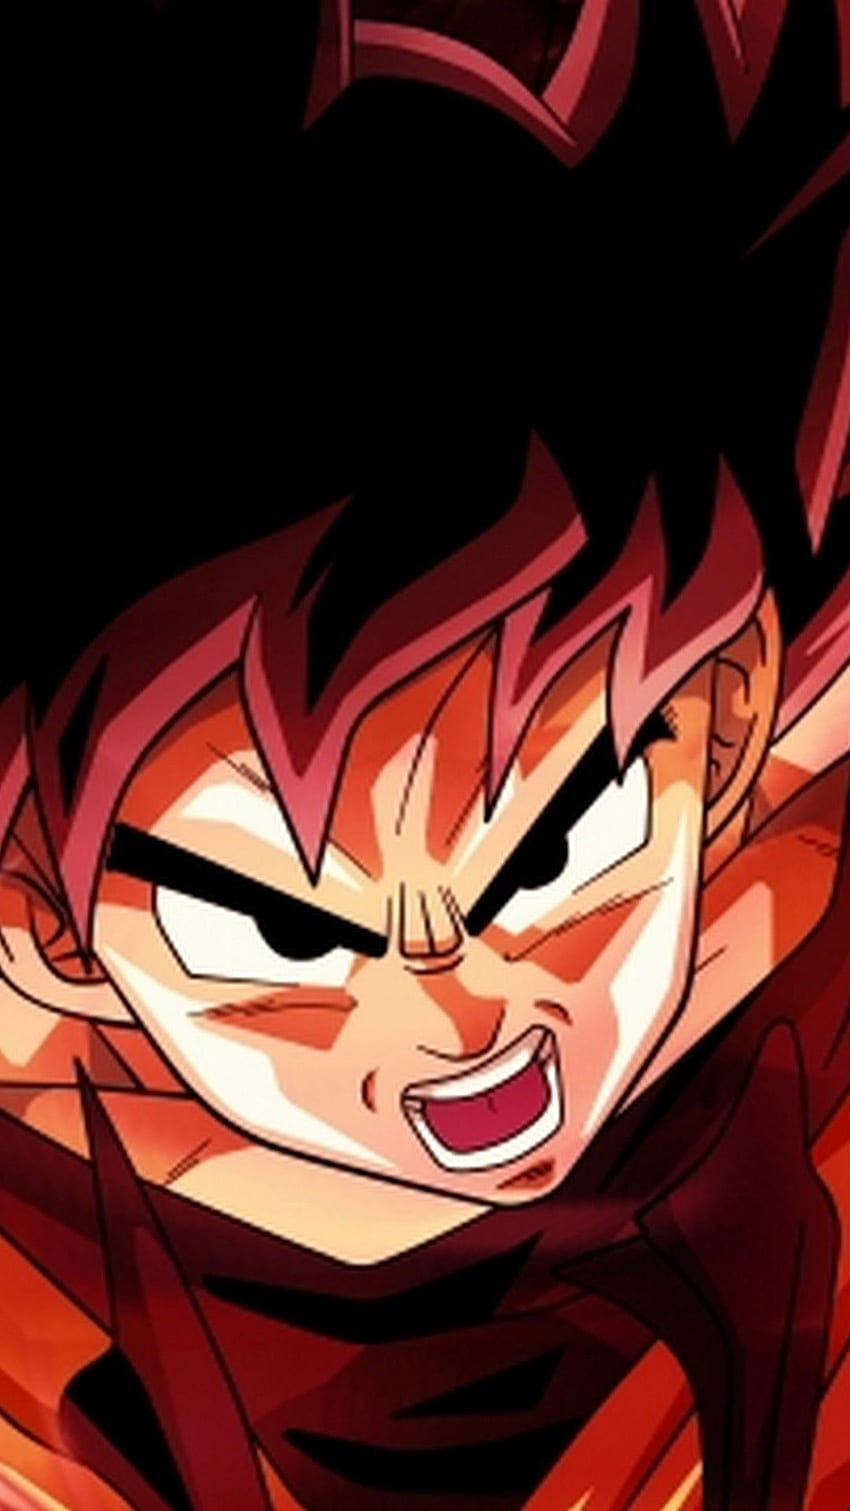 Goku Super Saiyan God Android - 2019. iPhone, Big God Goku HD phone wallpaper